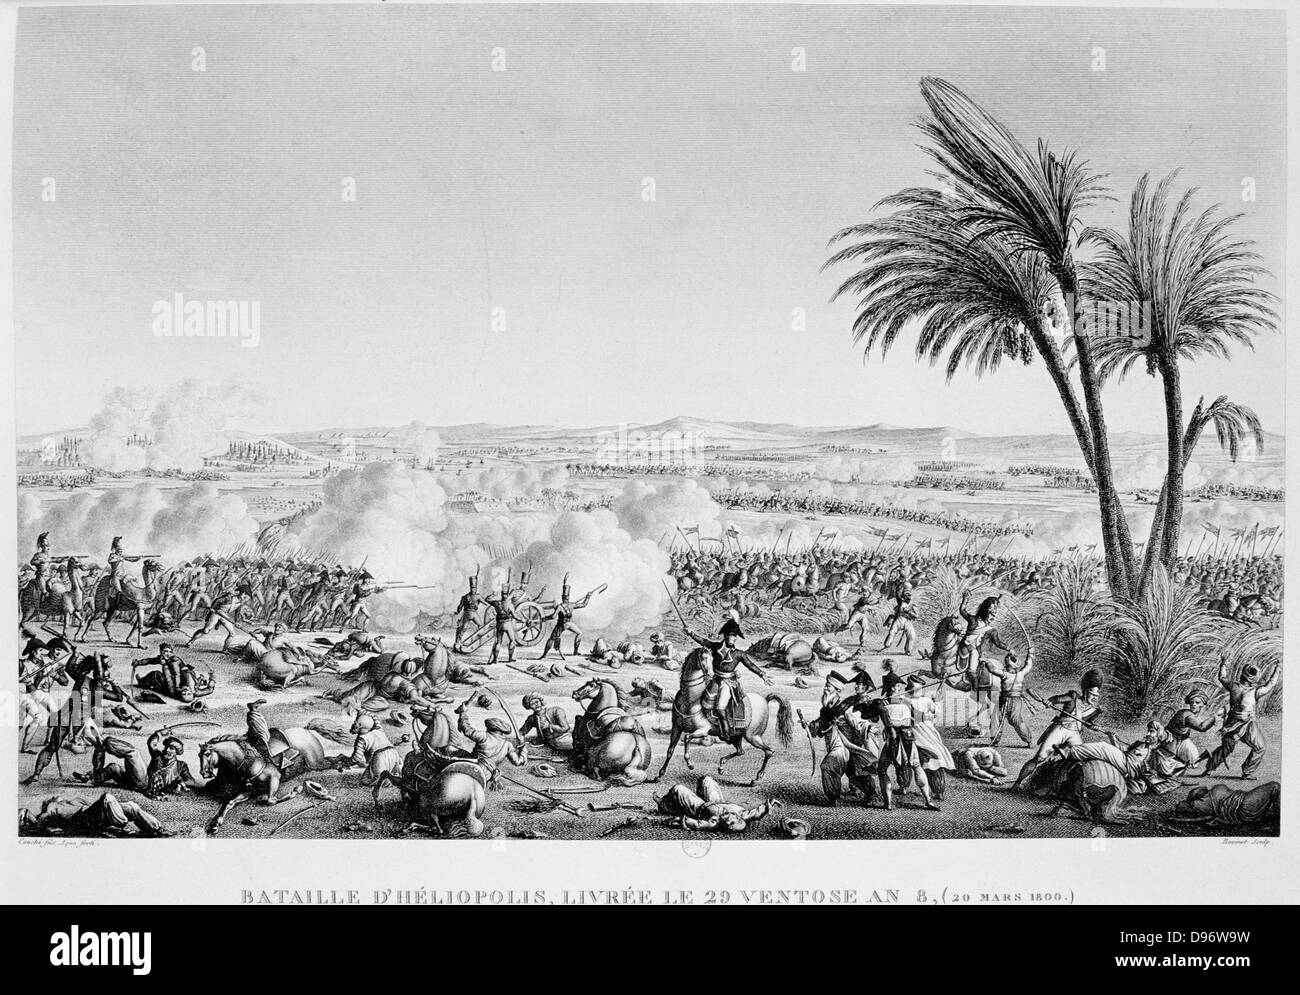 Schlacht von Heliopolis, Ägypten, 20. März 1800. Französisch unter  Jean-Baptiste Kleber besiegt die Osmanen unter Nassif Pasha. Gravur  Stockfotografie - Alamy